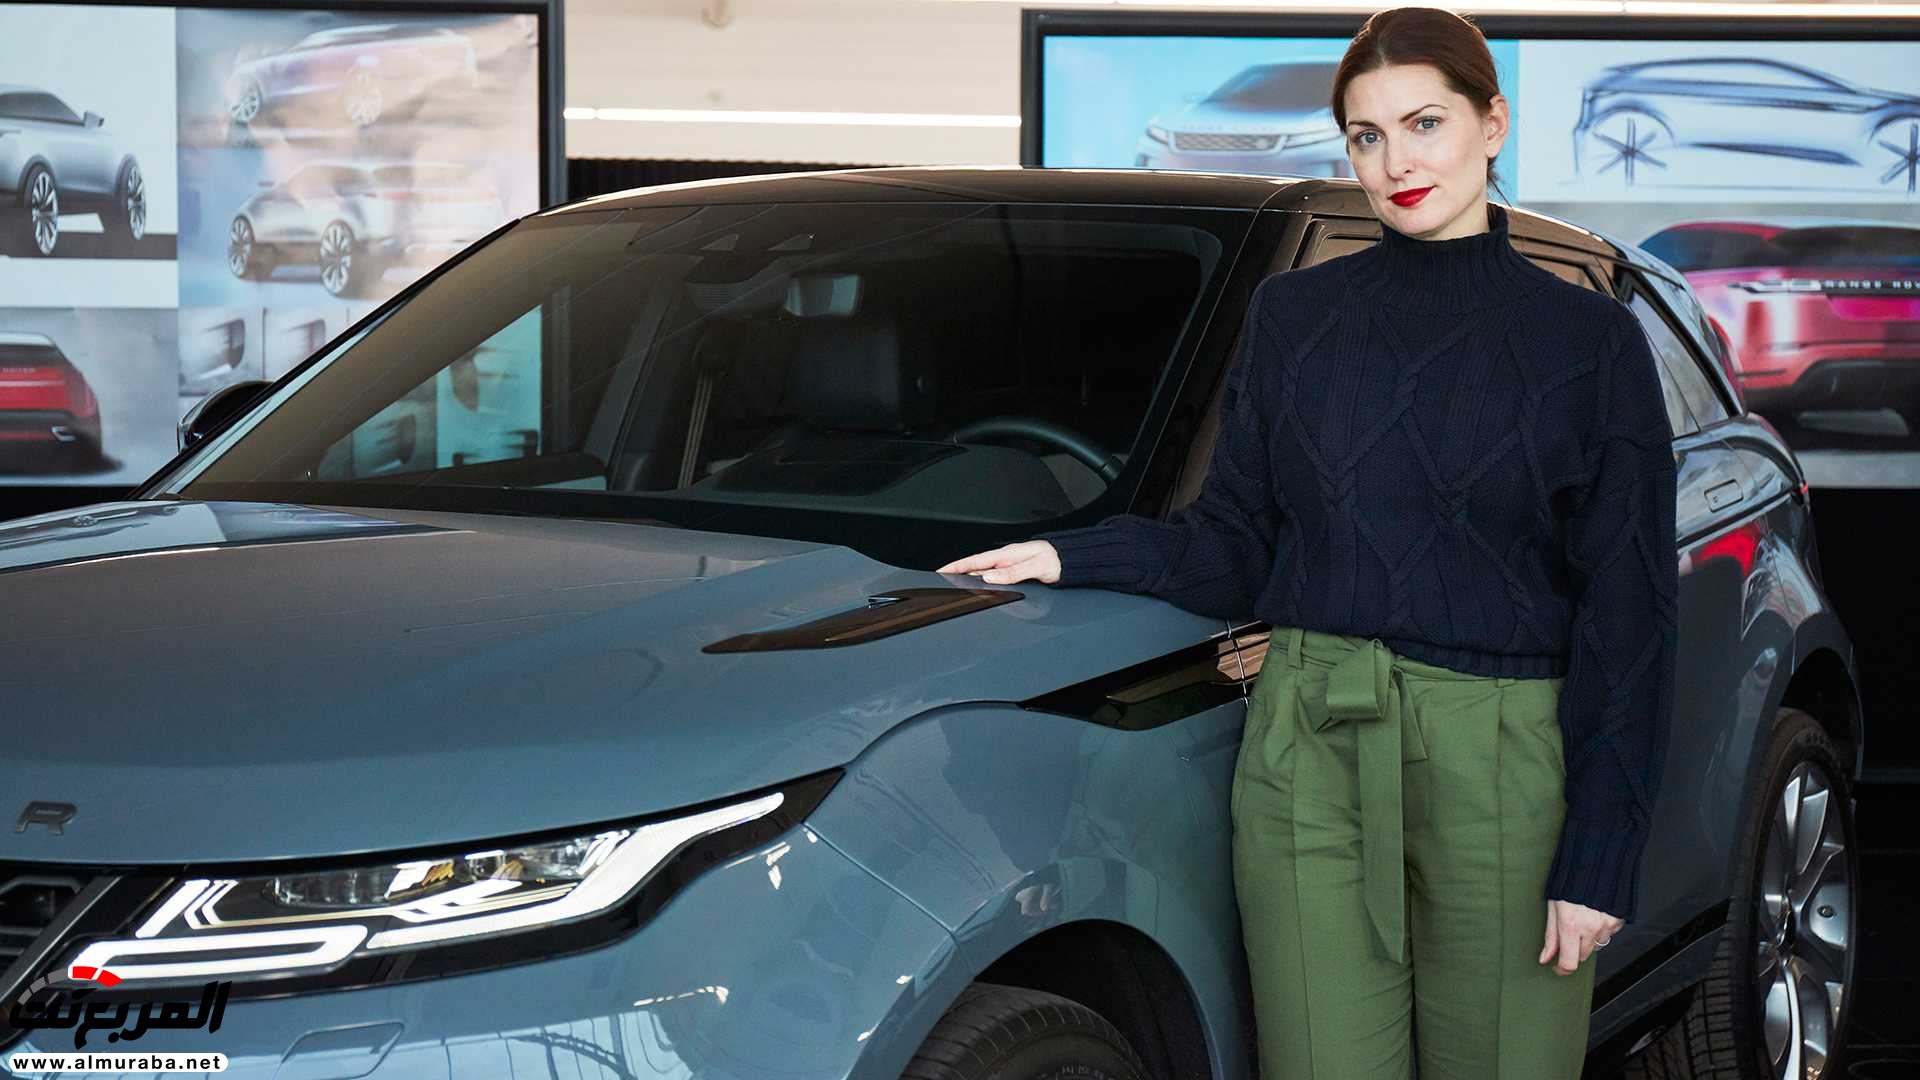 اهم 7 معلومات عن رنج روفر ايفوك 2020 الجديدة كلياً Range Rover Evoque 18